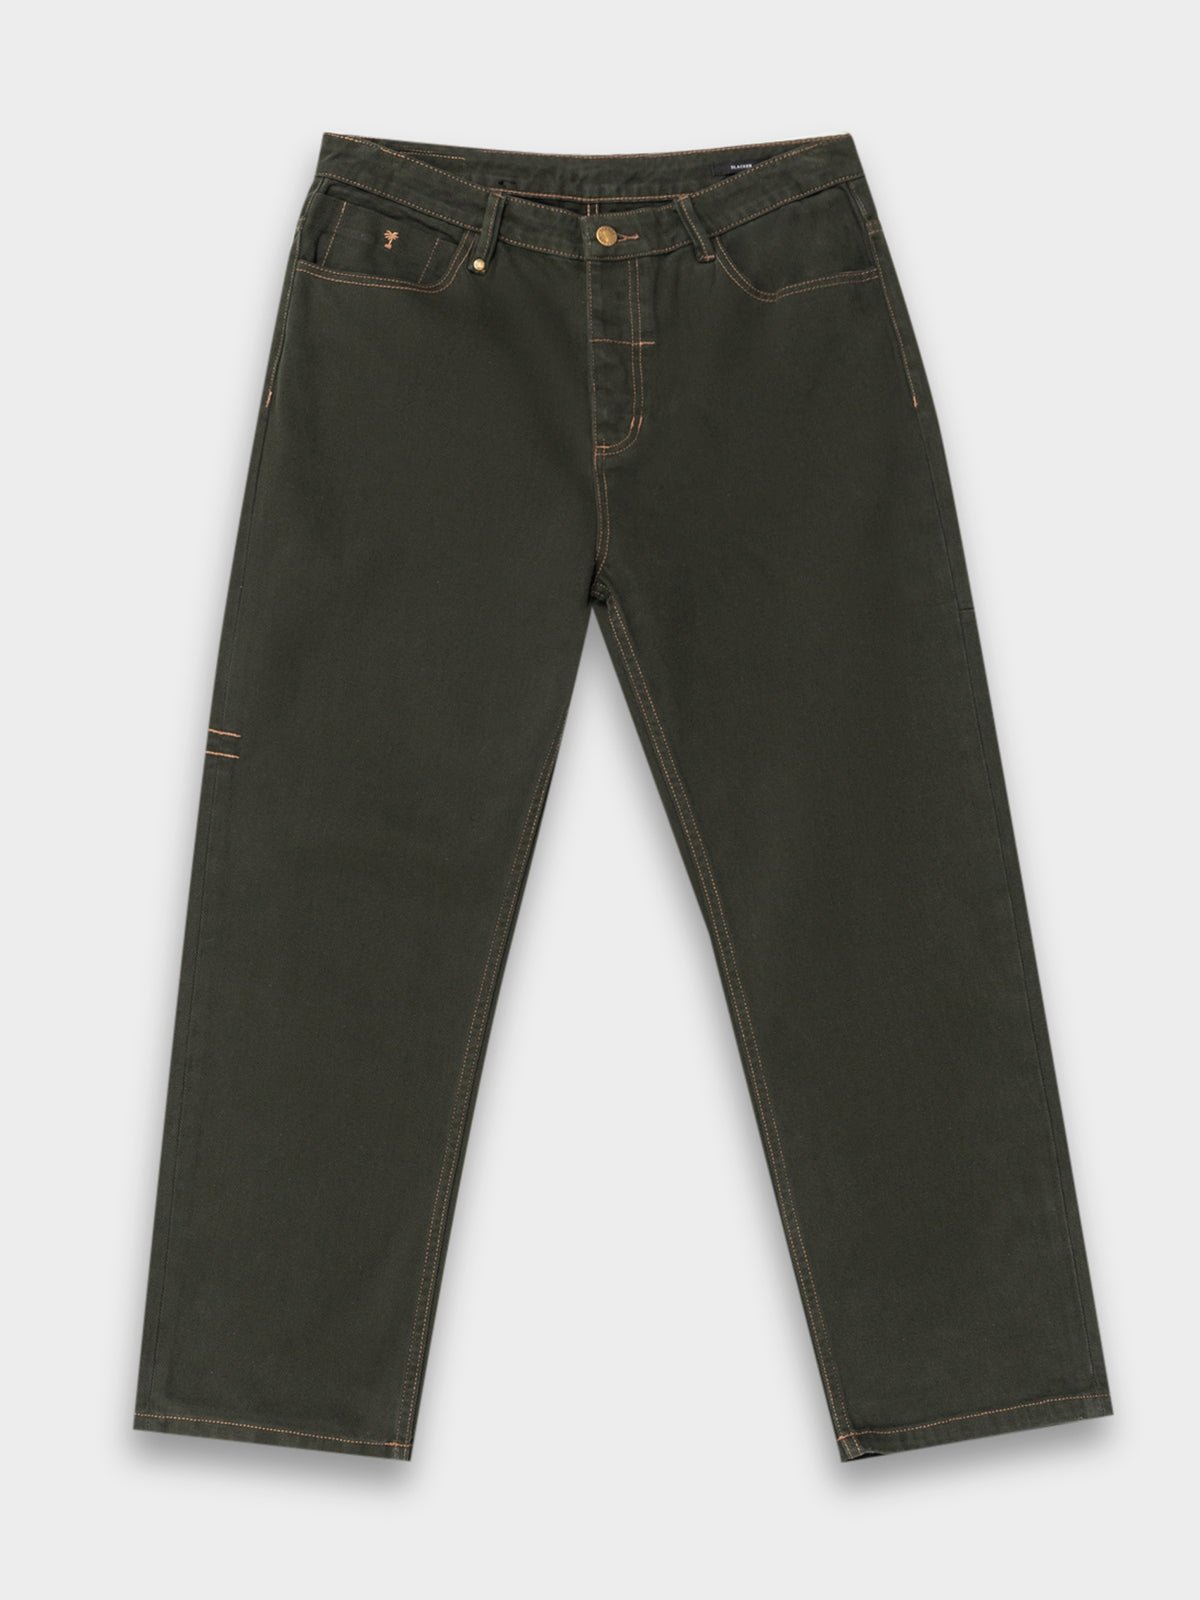 Slacker Denim Jeans in Oil Green Tobacco